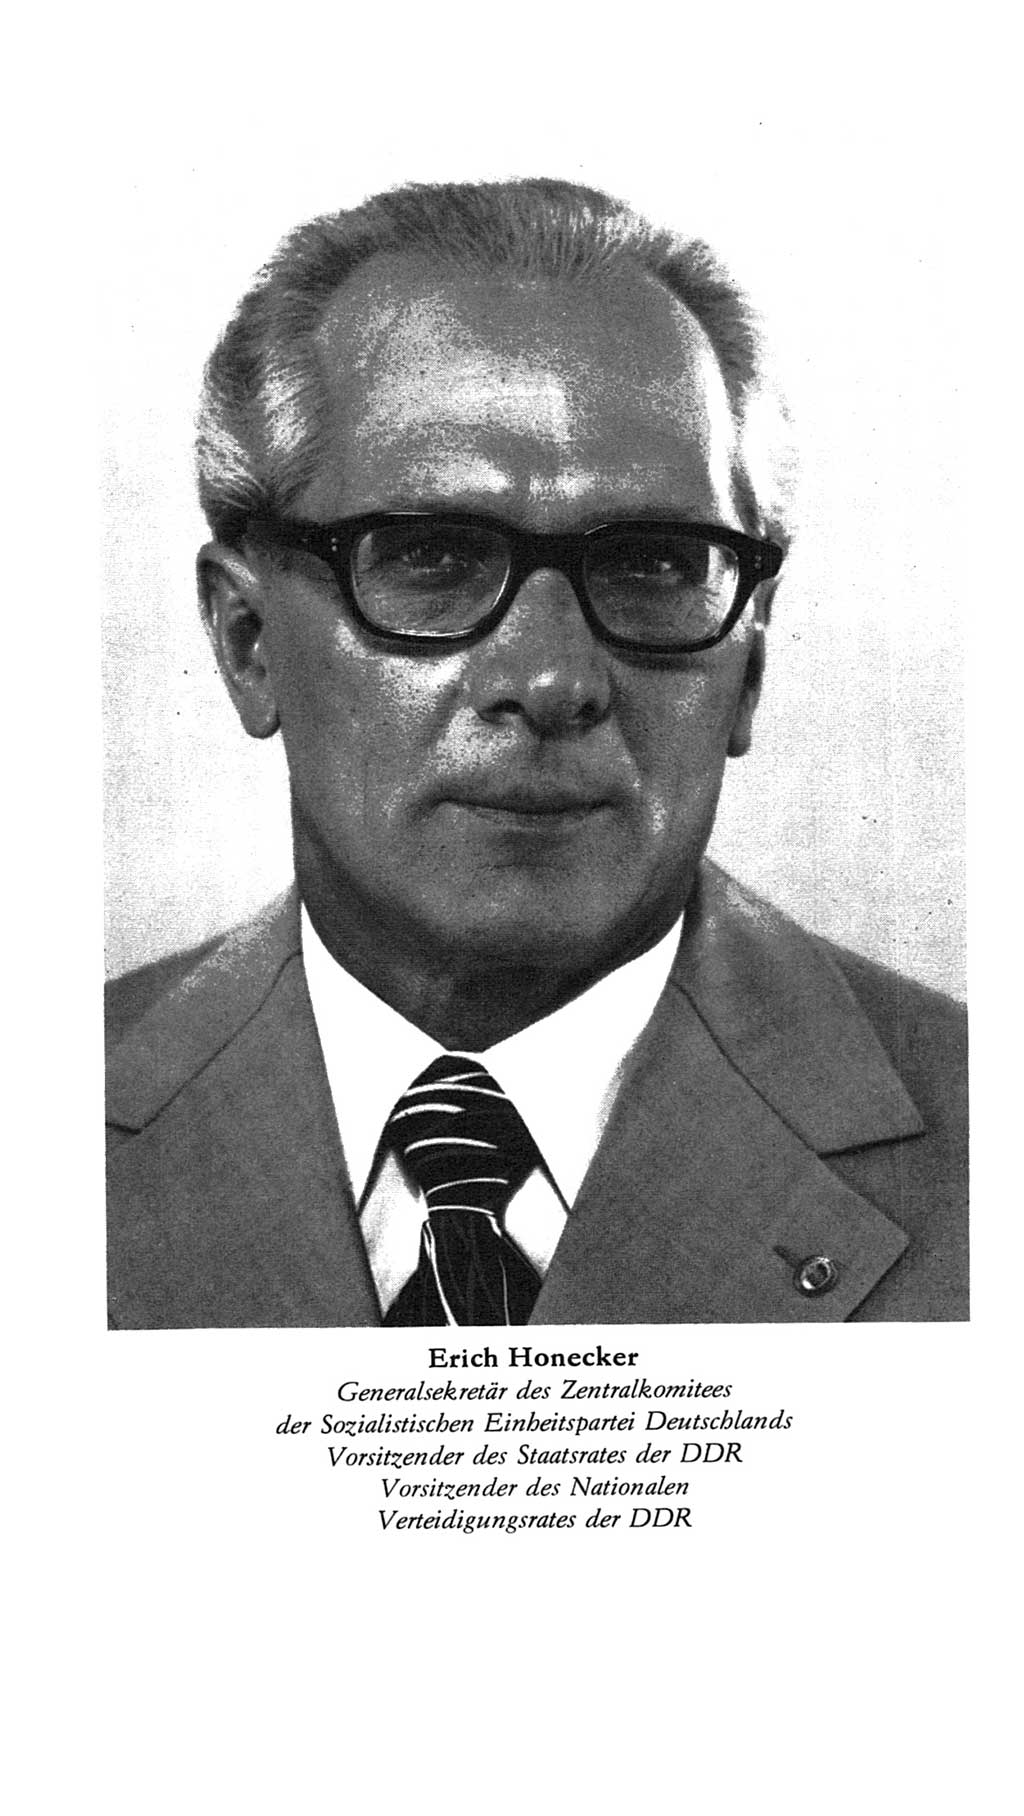 Volkskammer (VK) der Deutschen Demokratischen Republik (DDR), 7. Wahlperiode 1976-1981, Seite 7 (VK. DDR 7. WP. 1976-1981, S. 7)